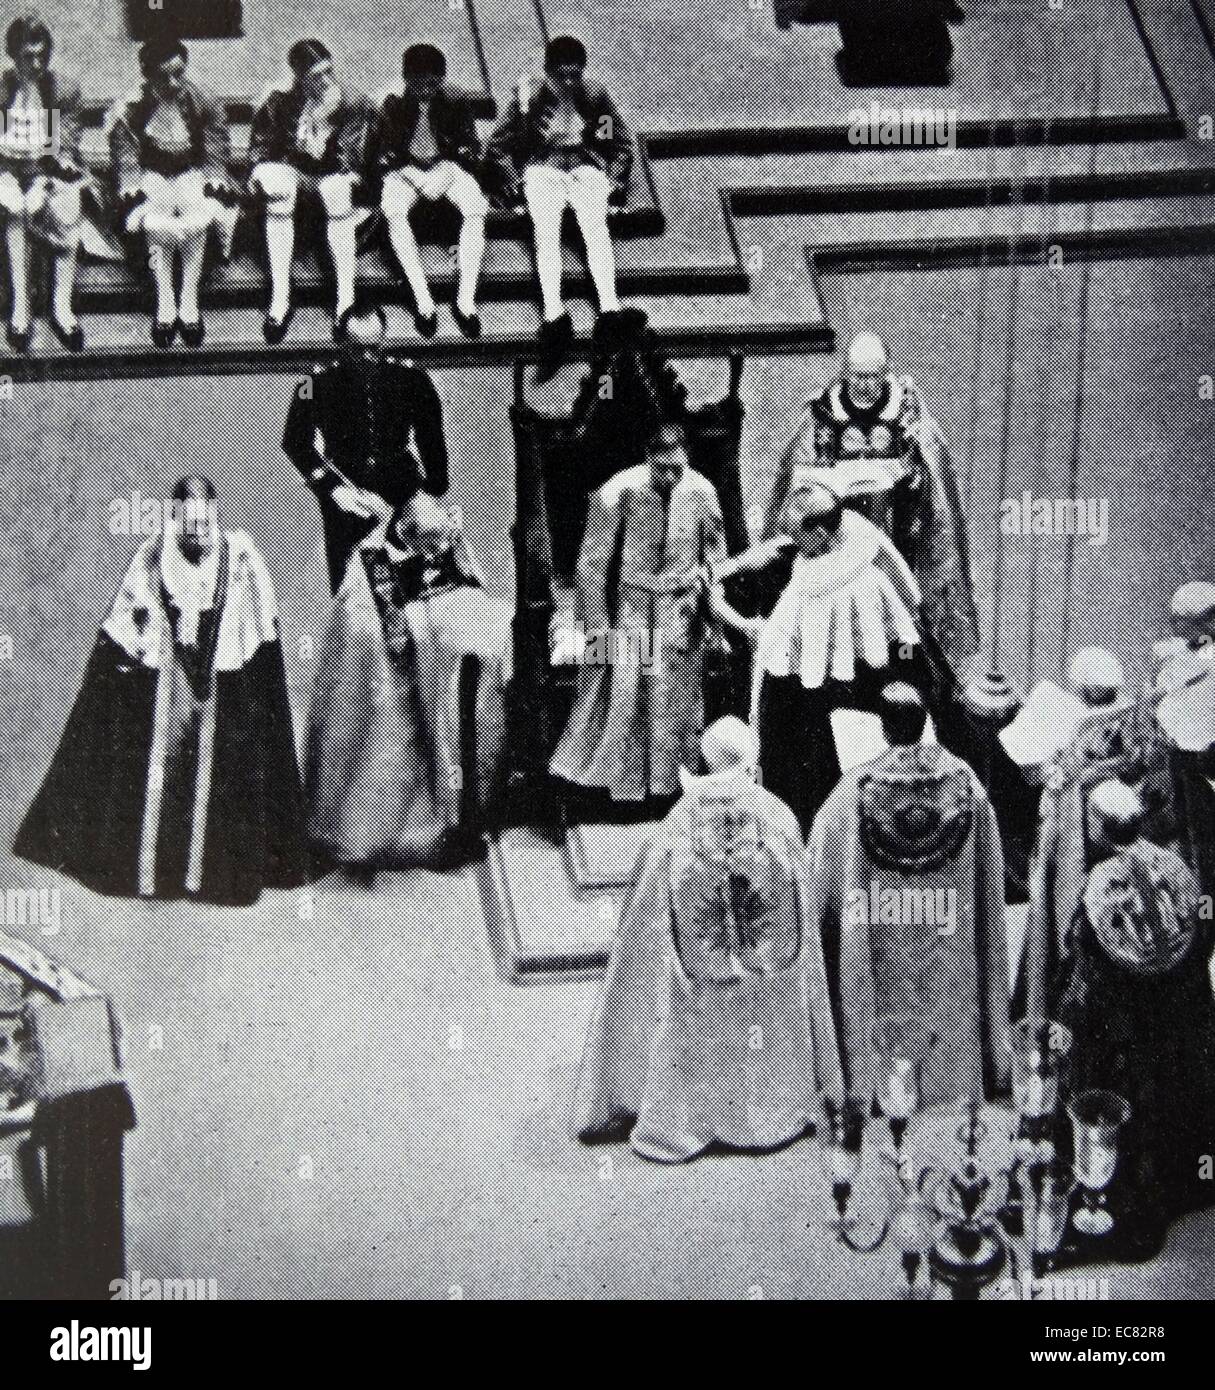 Foto von König George VI (1895-1952) während seiner Krönung. Datierte 1937 Stockfoto